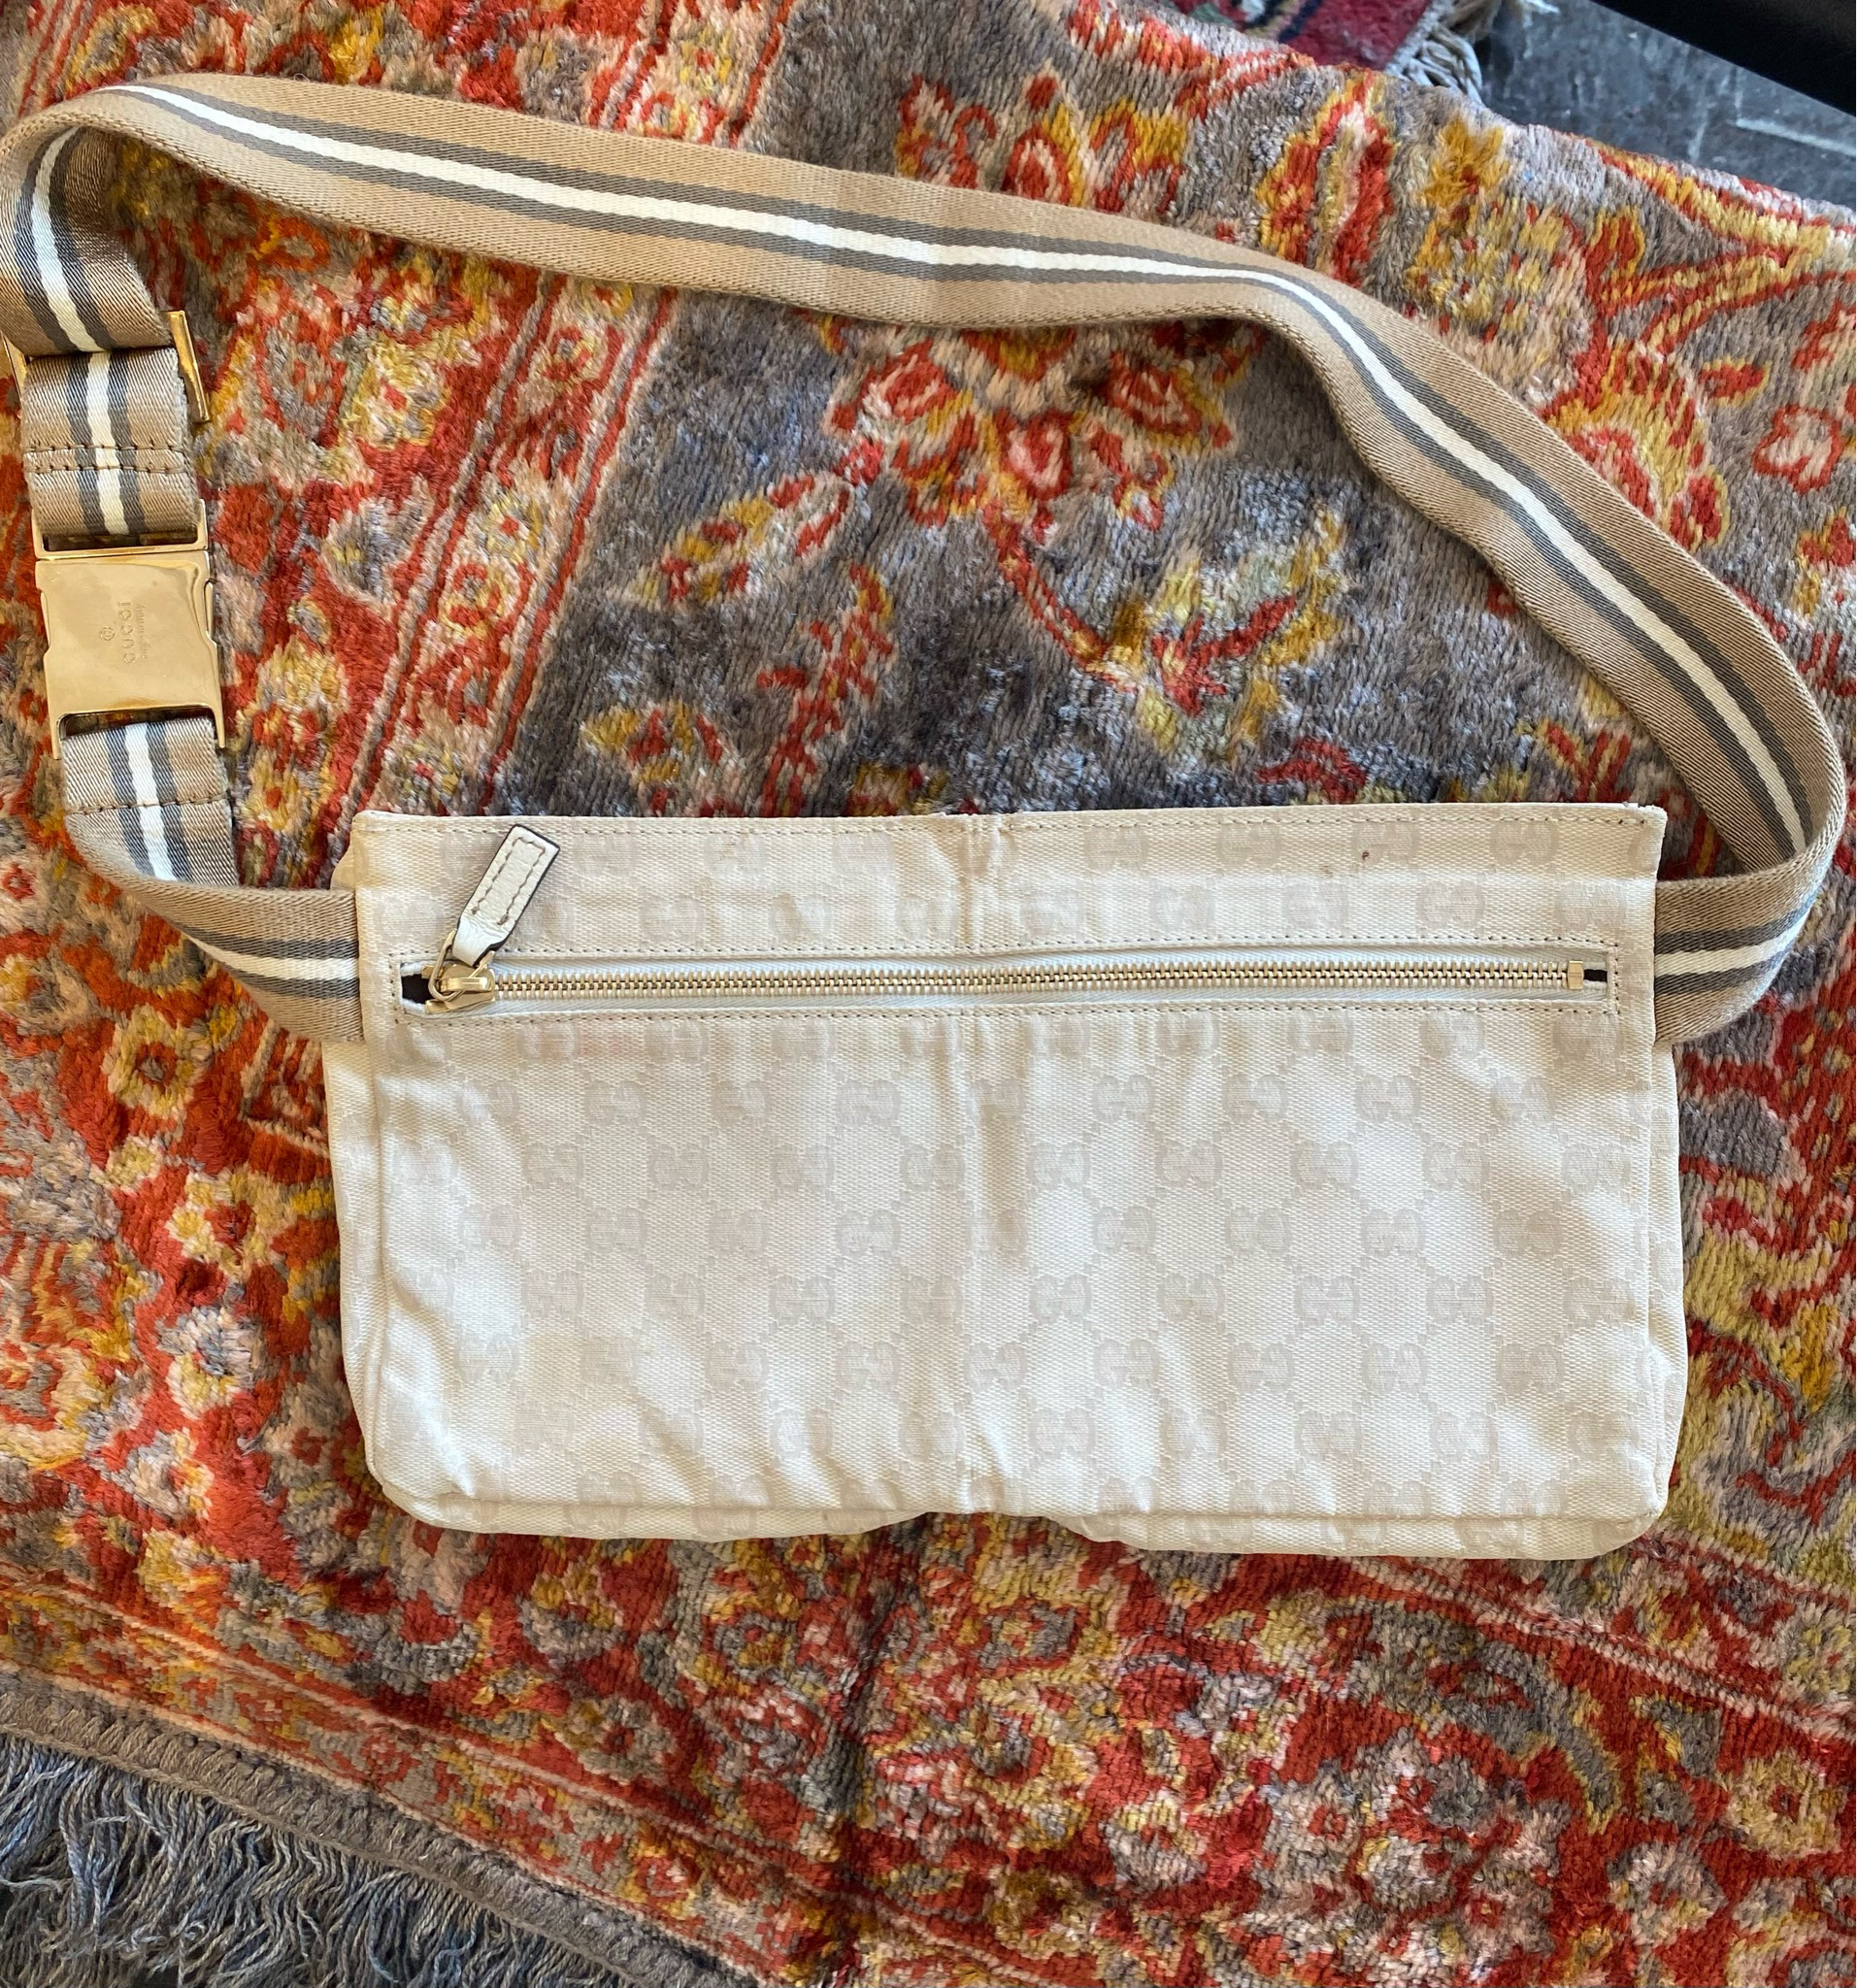 Vintage Gucci Fanny Pack Belt Bag Authentic